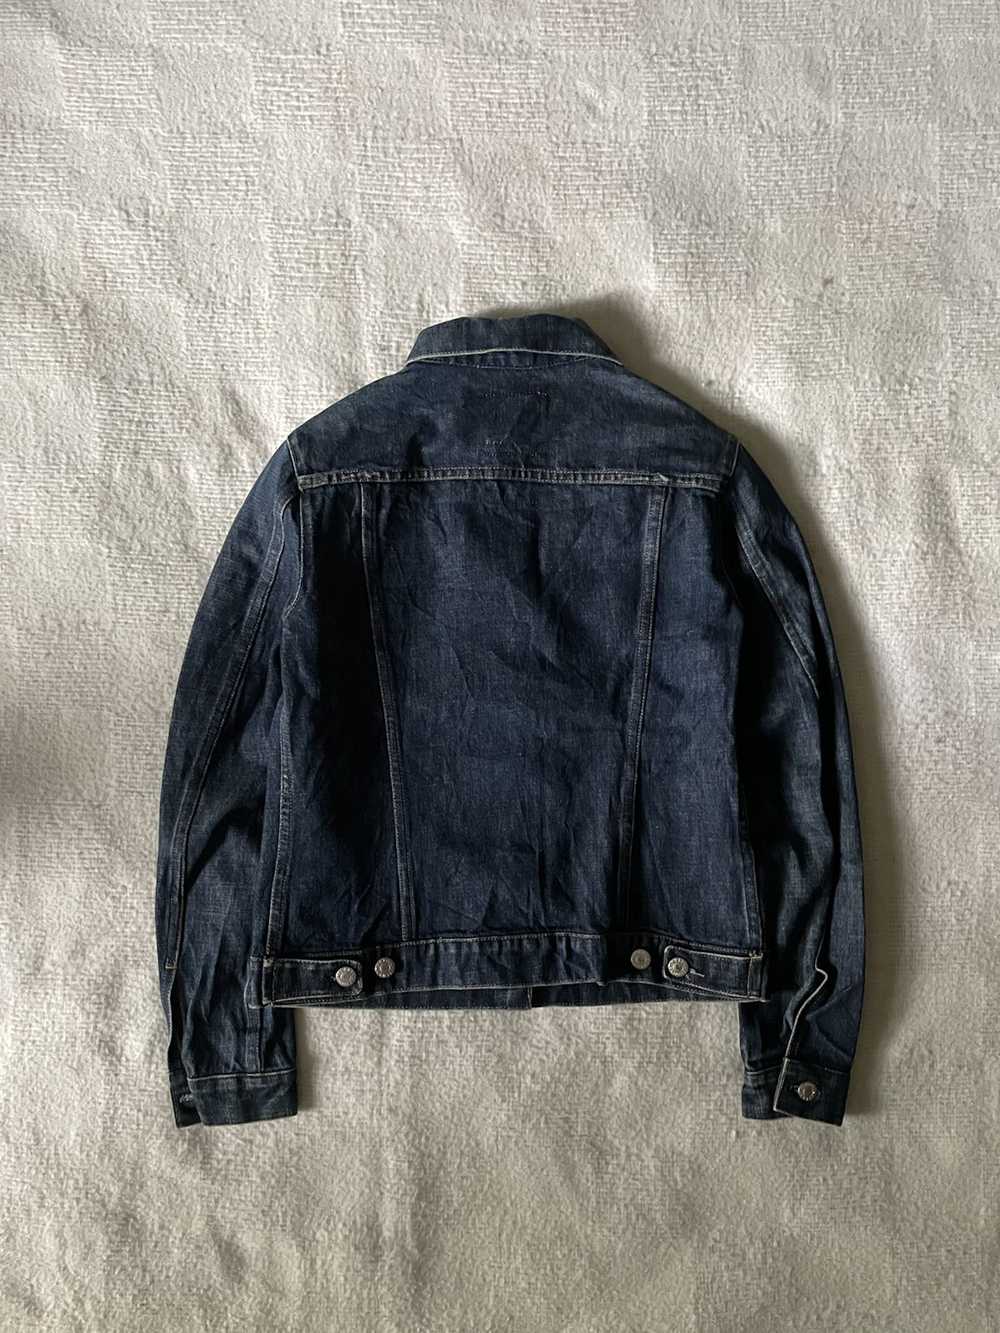 Helmut Lang × Vintage Helmut Lang Raw Denim Jacket - image 2